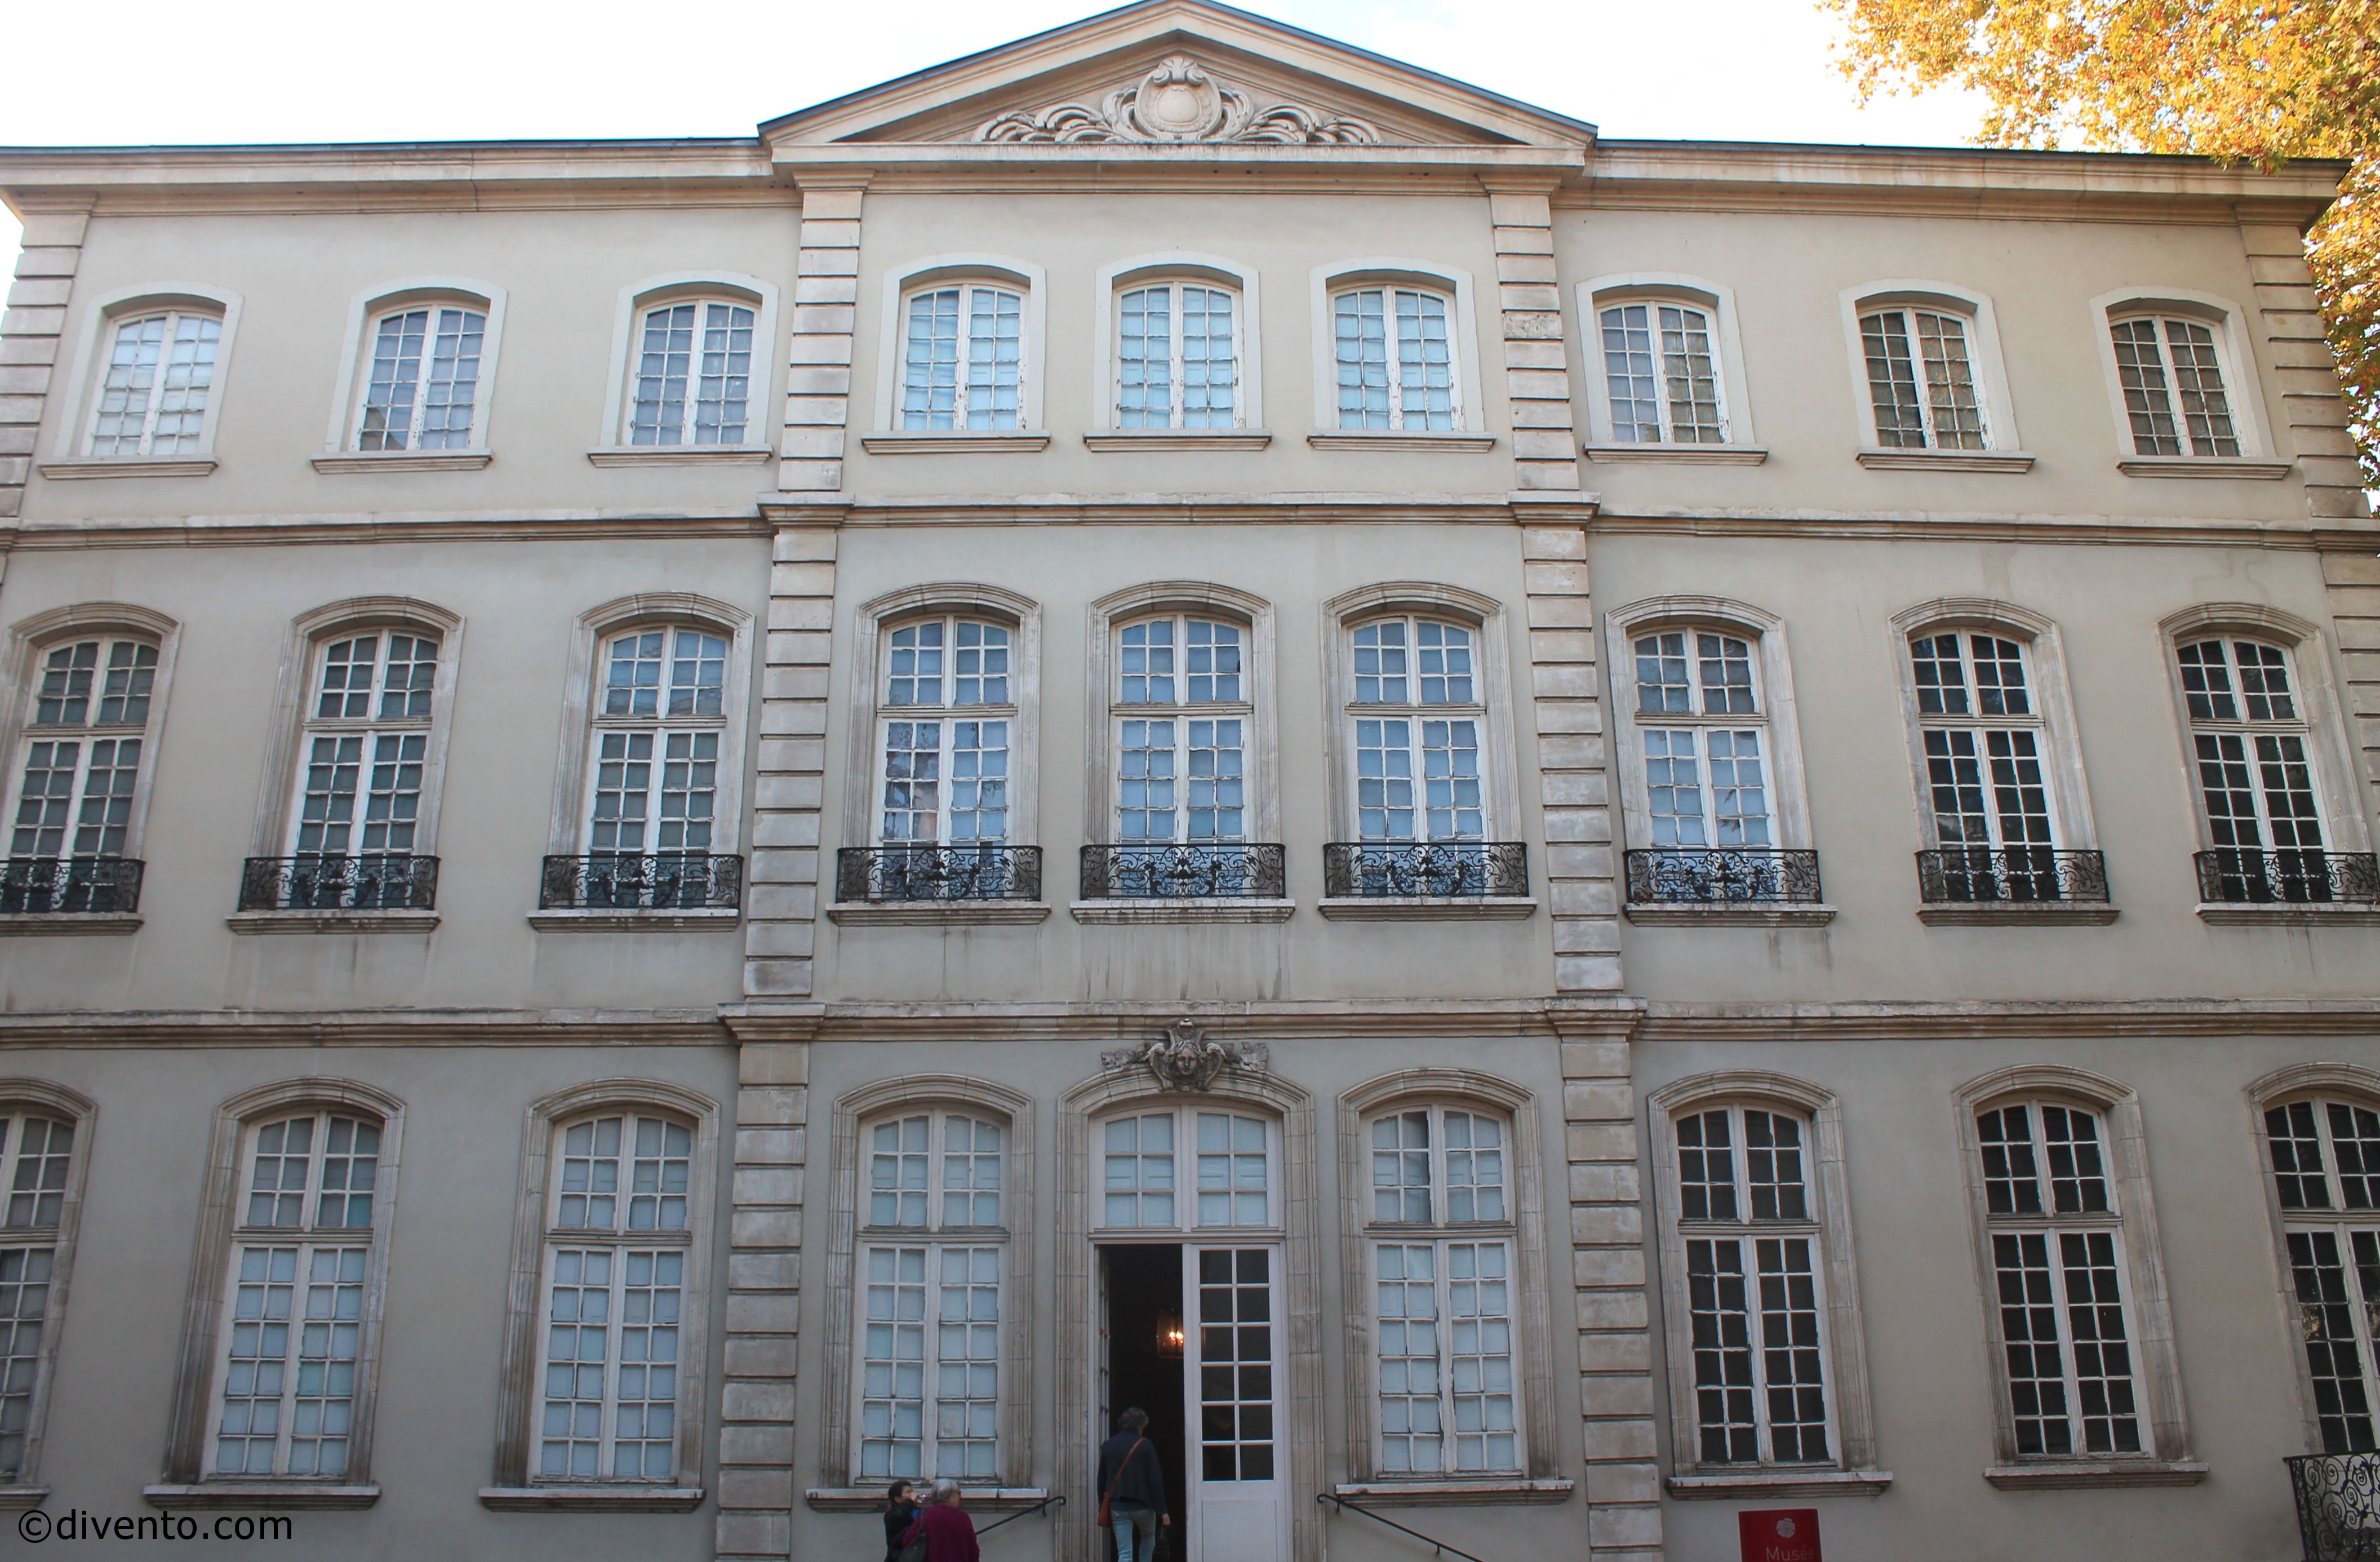 Musée des tissus et des arts décoratifs, Lyon: All year